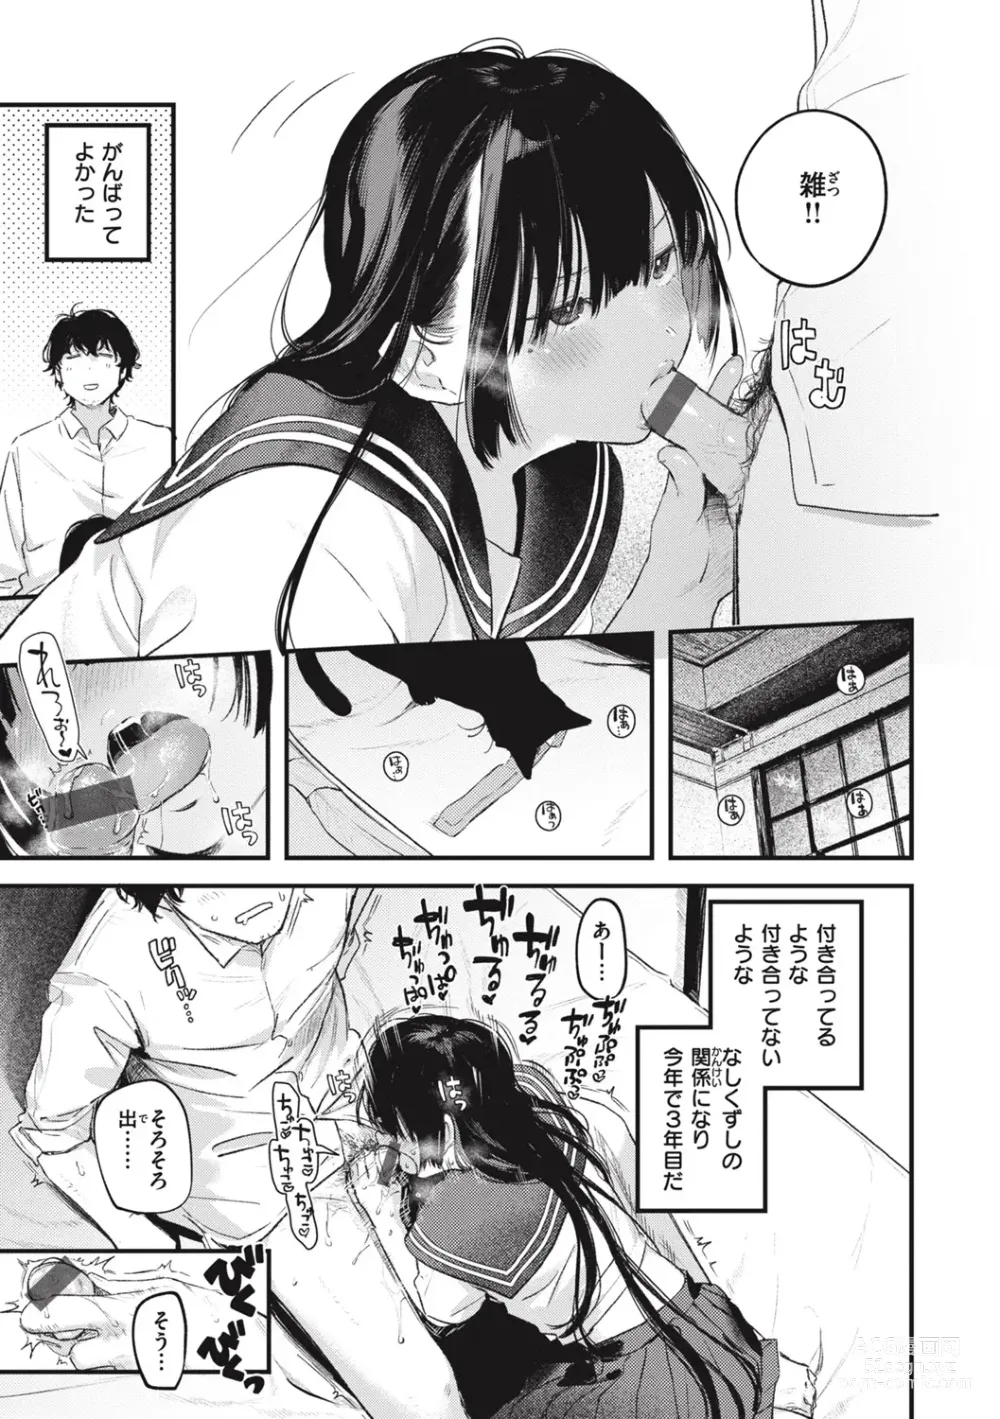 Page 11 of manga Koi no Mukidashi